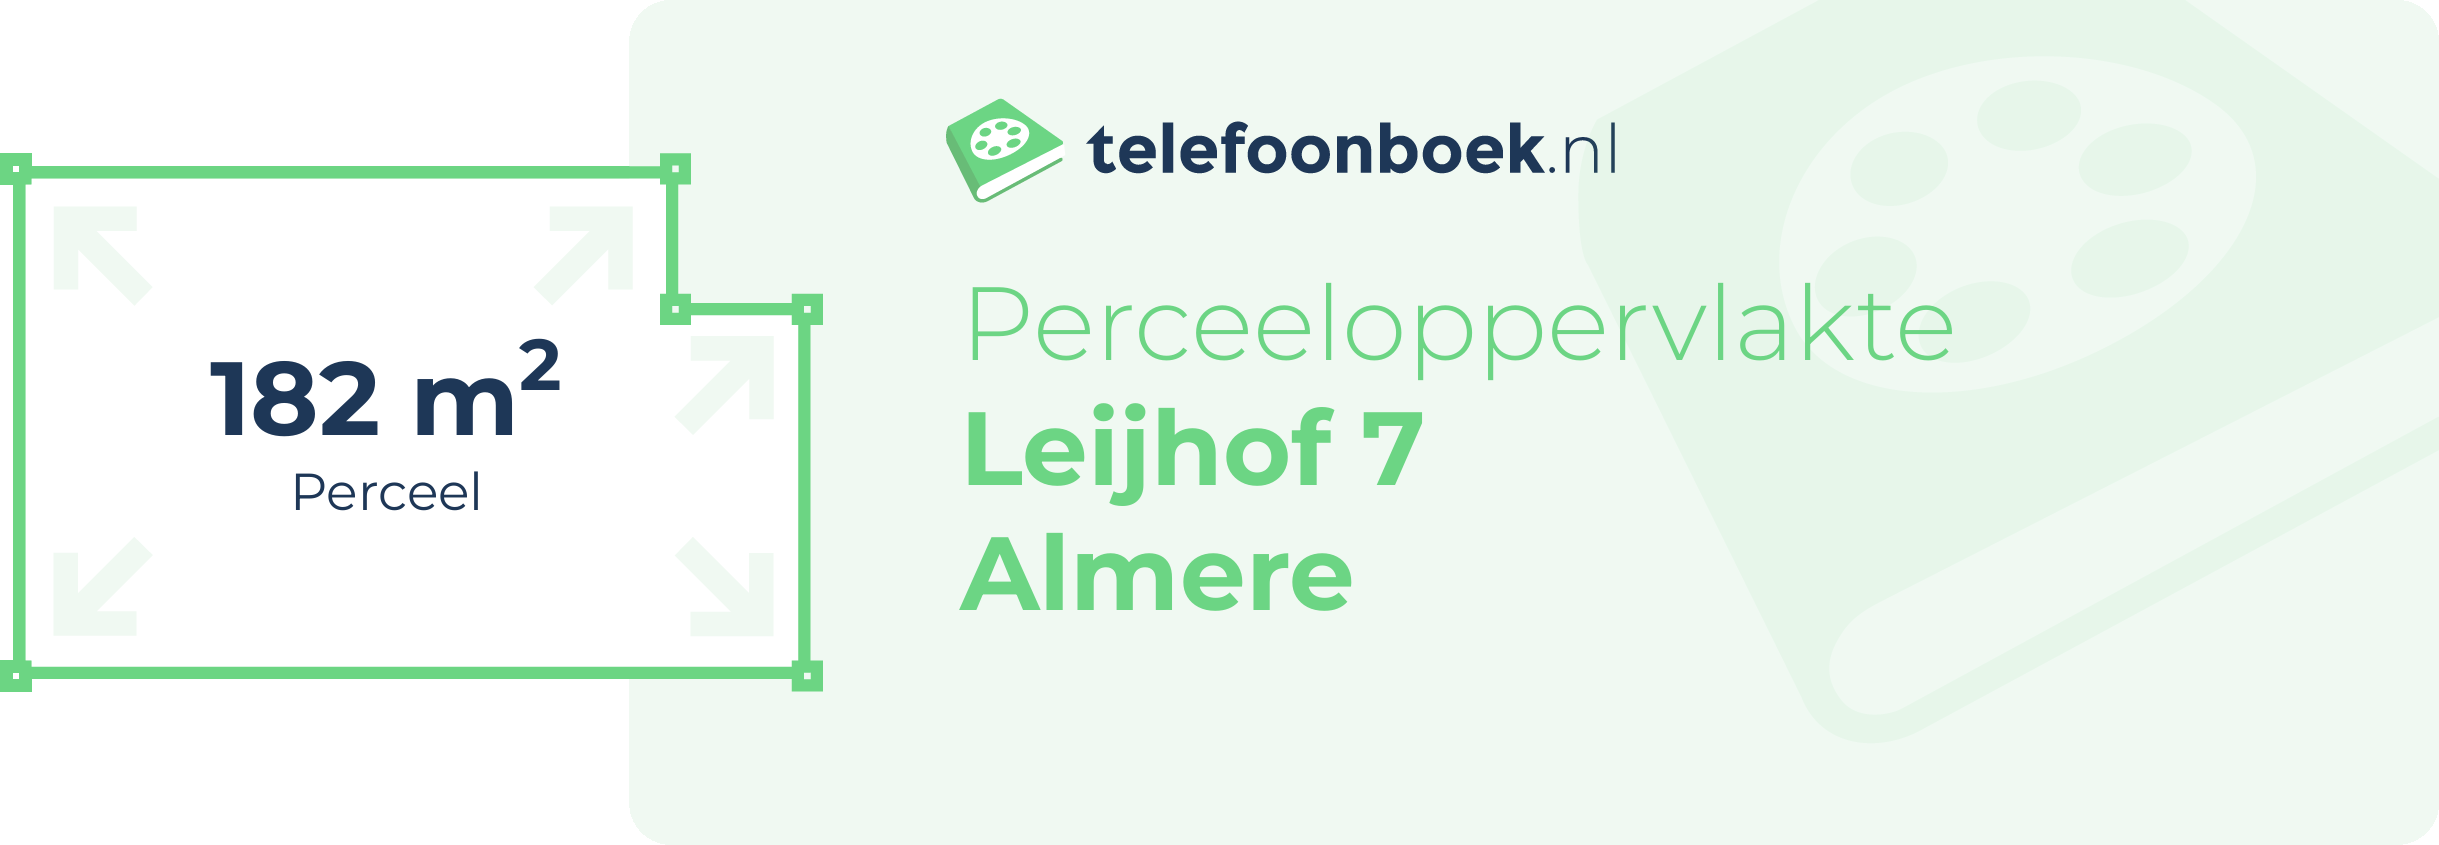 Perceeloppervlakte Leijhof 7 Almere